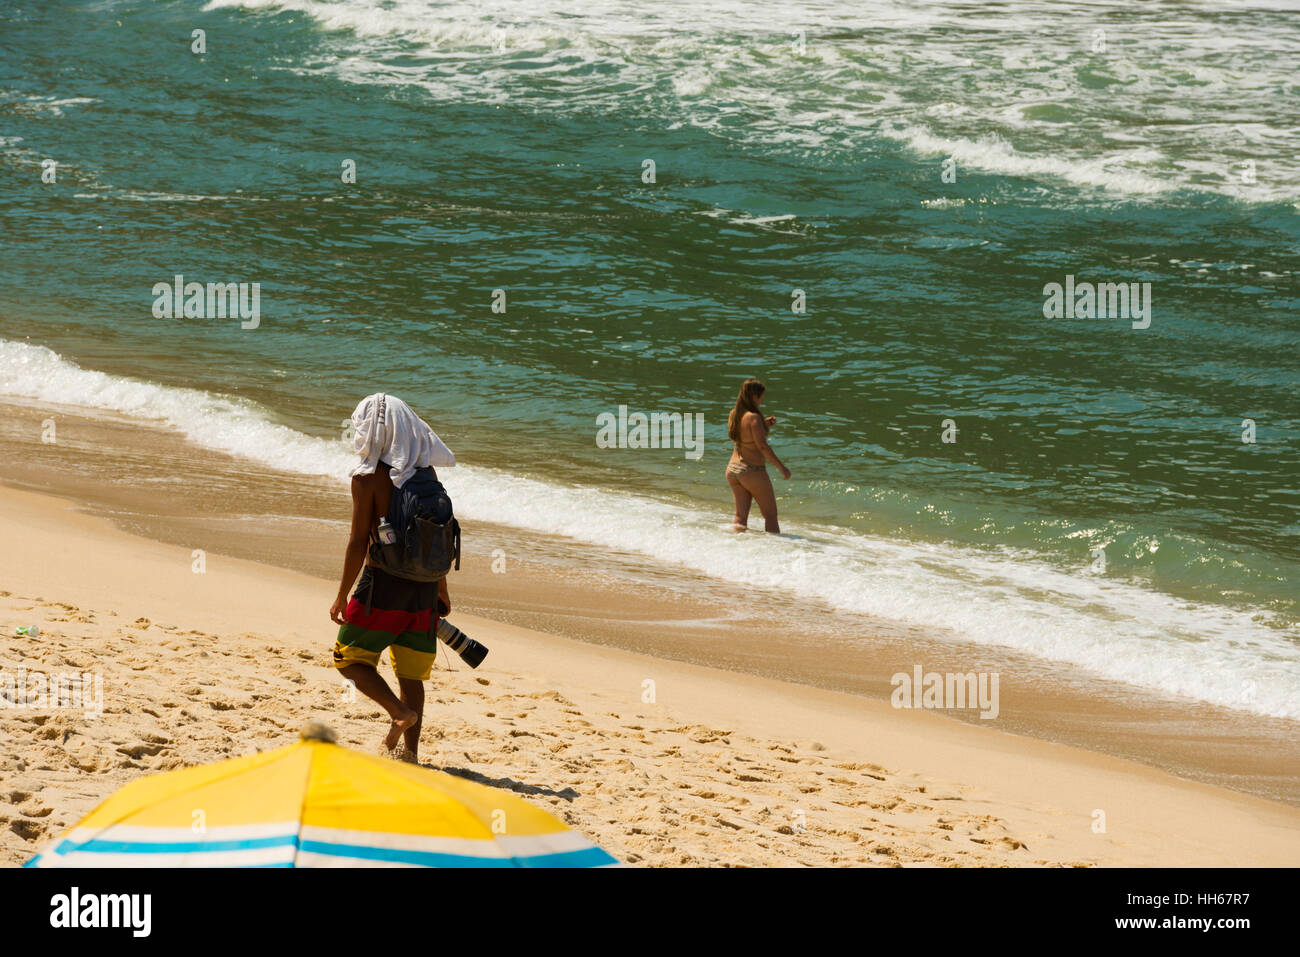 a photographer on a beach, Rio de Janeiro, Brazil Stock Photo